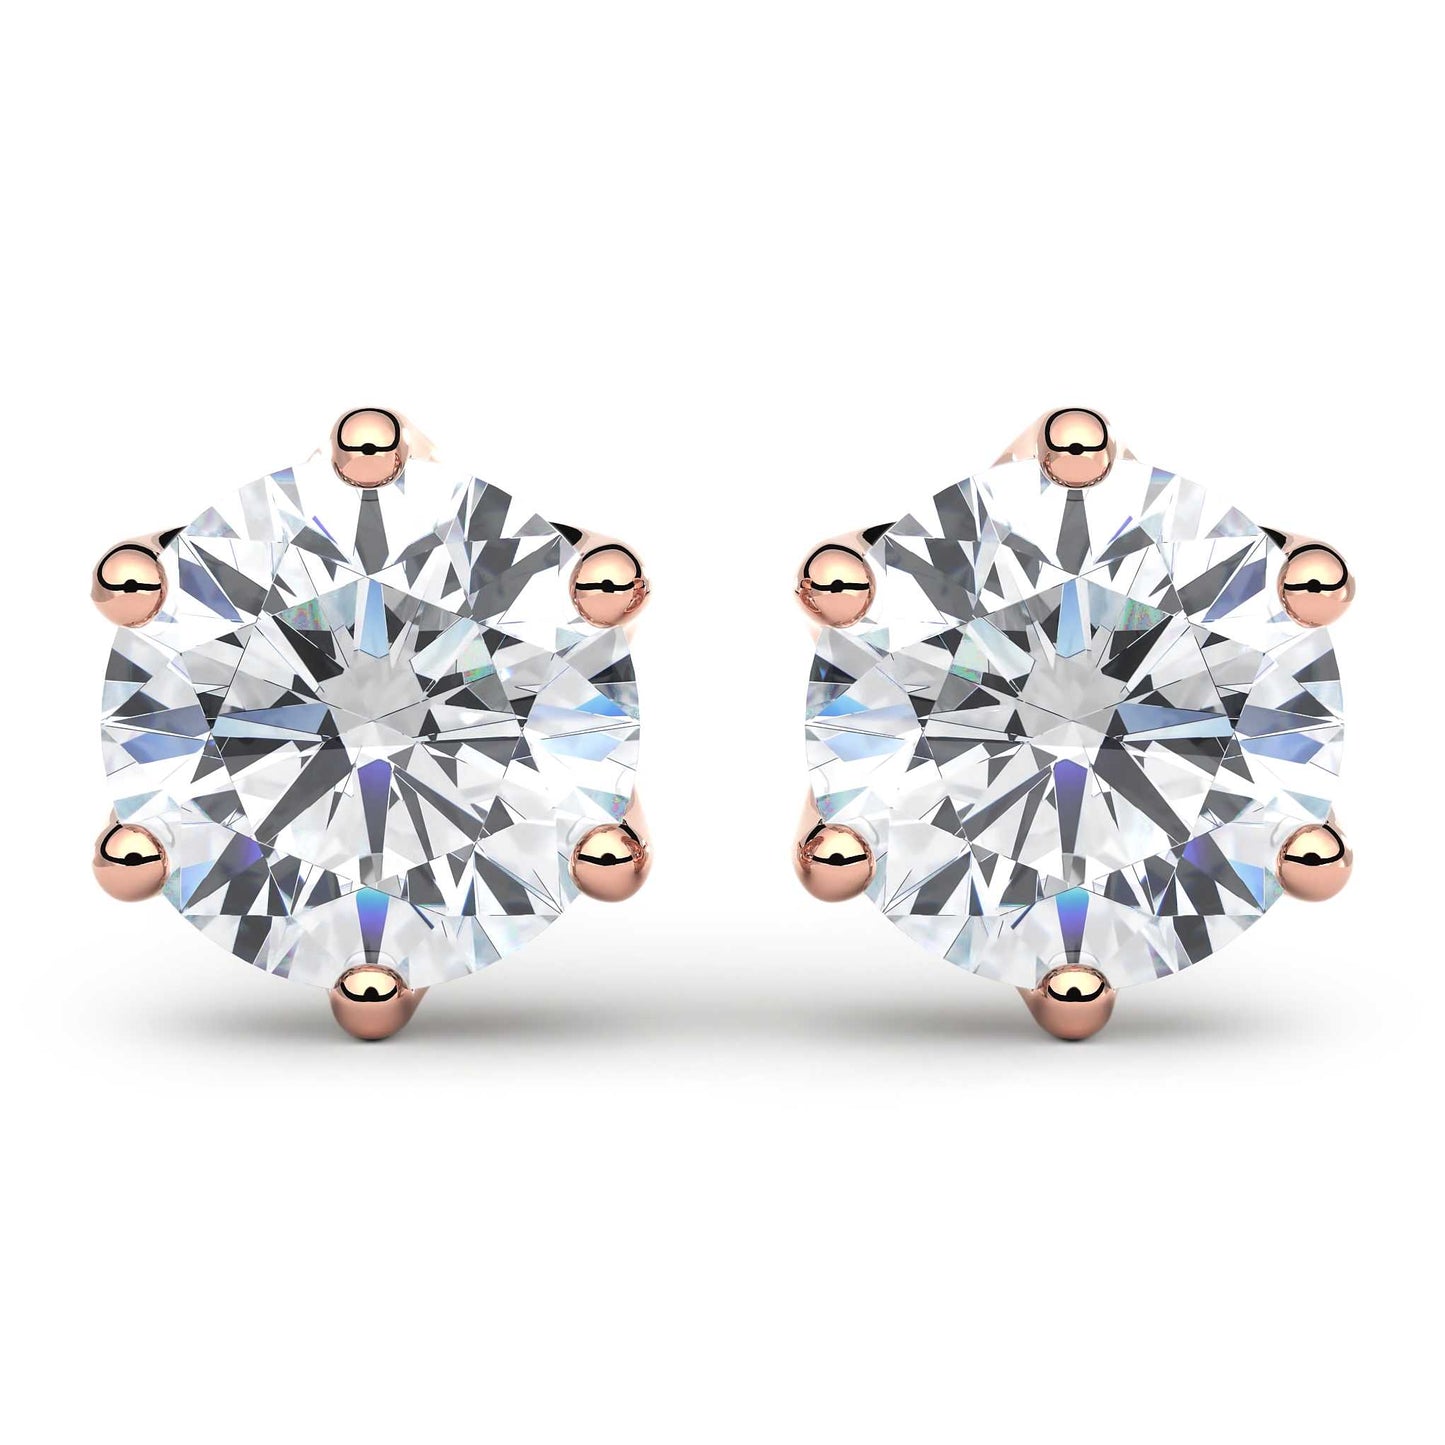 Suokko Timanttikorut -timanttikorvakorut rosakultaa, jossa istutettuna yksi timantti. Tuotekoodi KE13033BR100